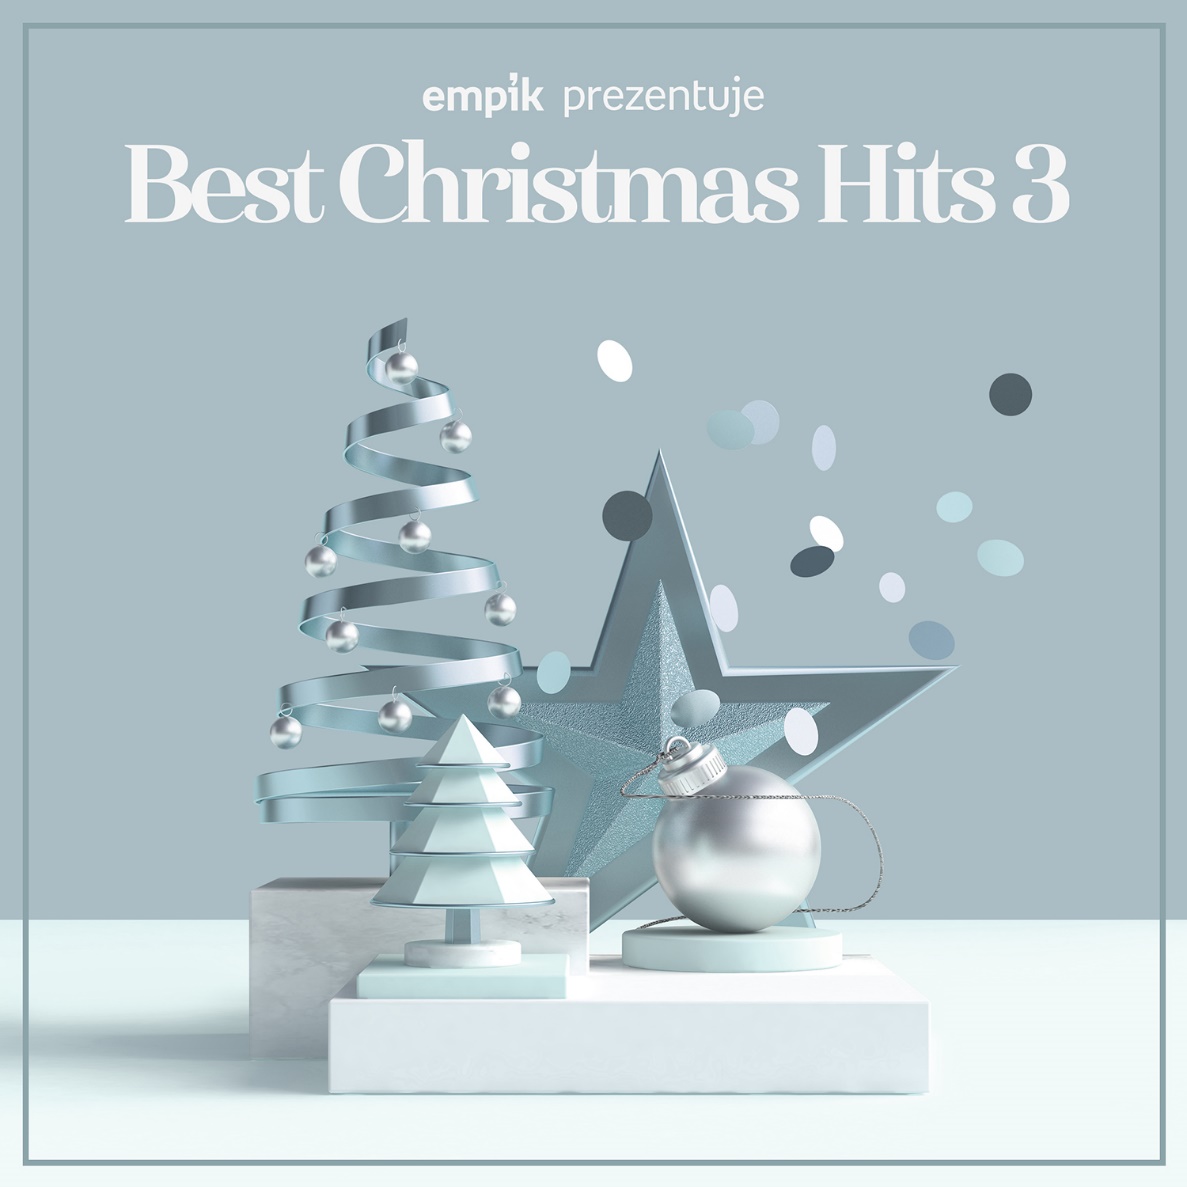 Premiera świątecznego albumu Best Christmas Hits vol. 3 już w piątek!